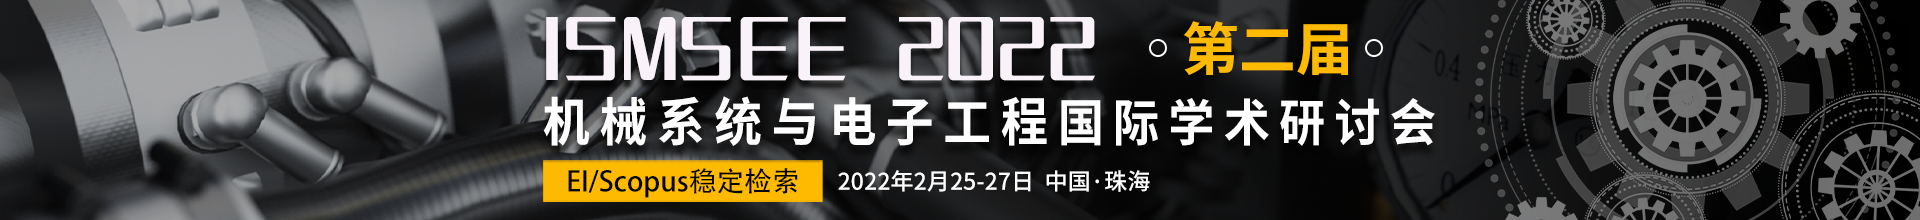 2月珠海-ISMSEE2022-会议云banner-1217.png